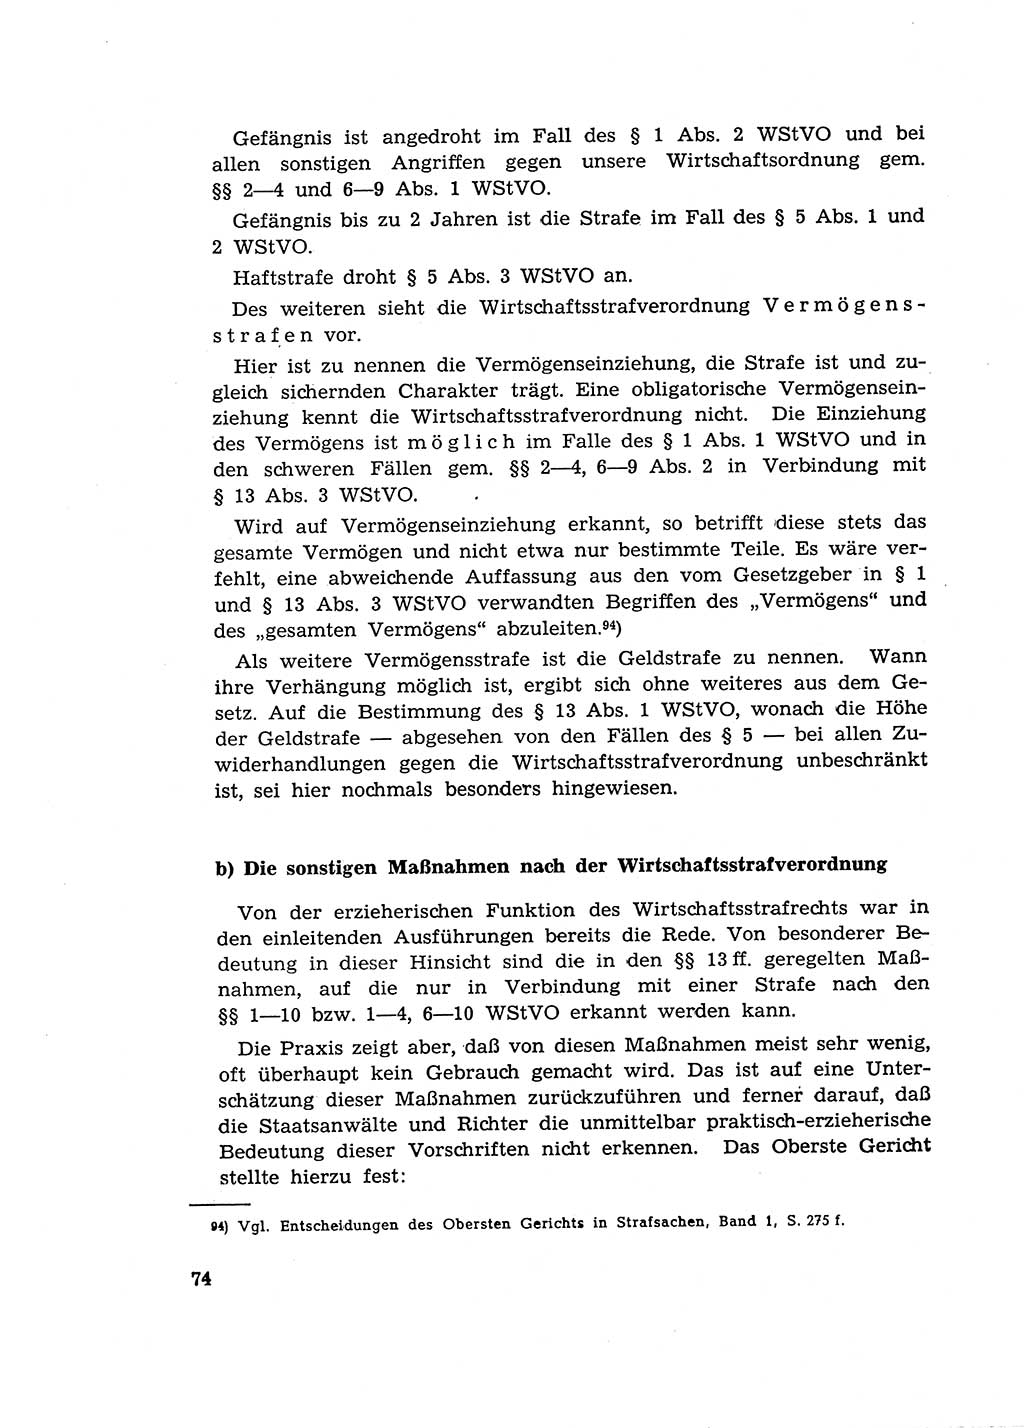 Materialien zum Strafrecht, Besonderer Teil [Deutsche Demokratische Republik (DDR)] 1955, Seite 74 (Mat. Strafr. BT DDR 1955, S. 74)